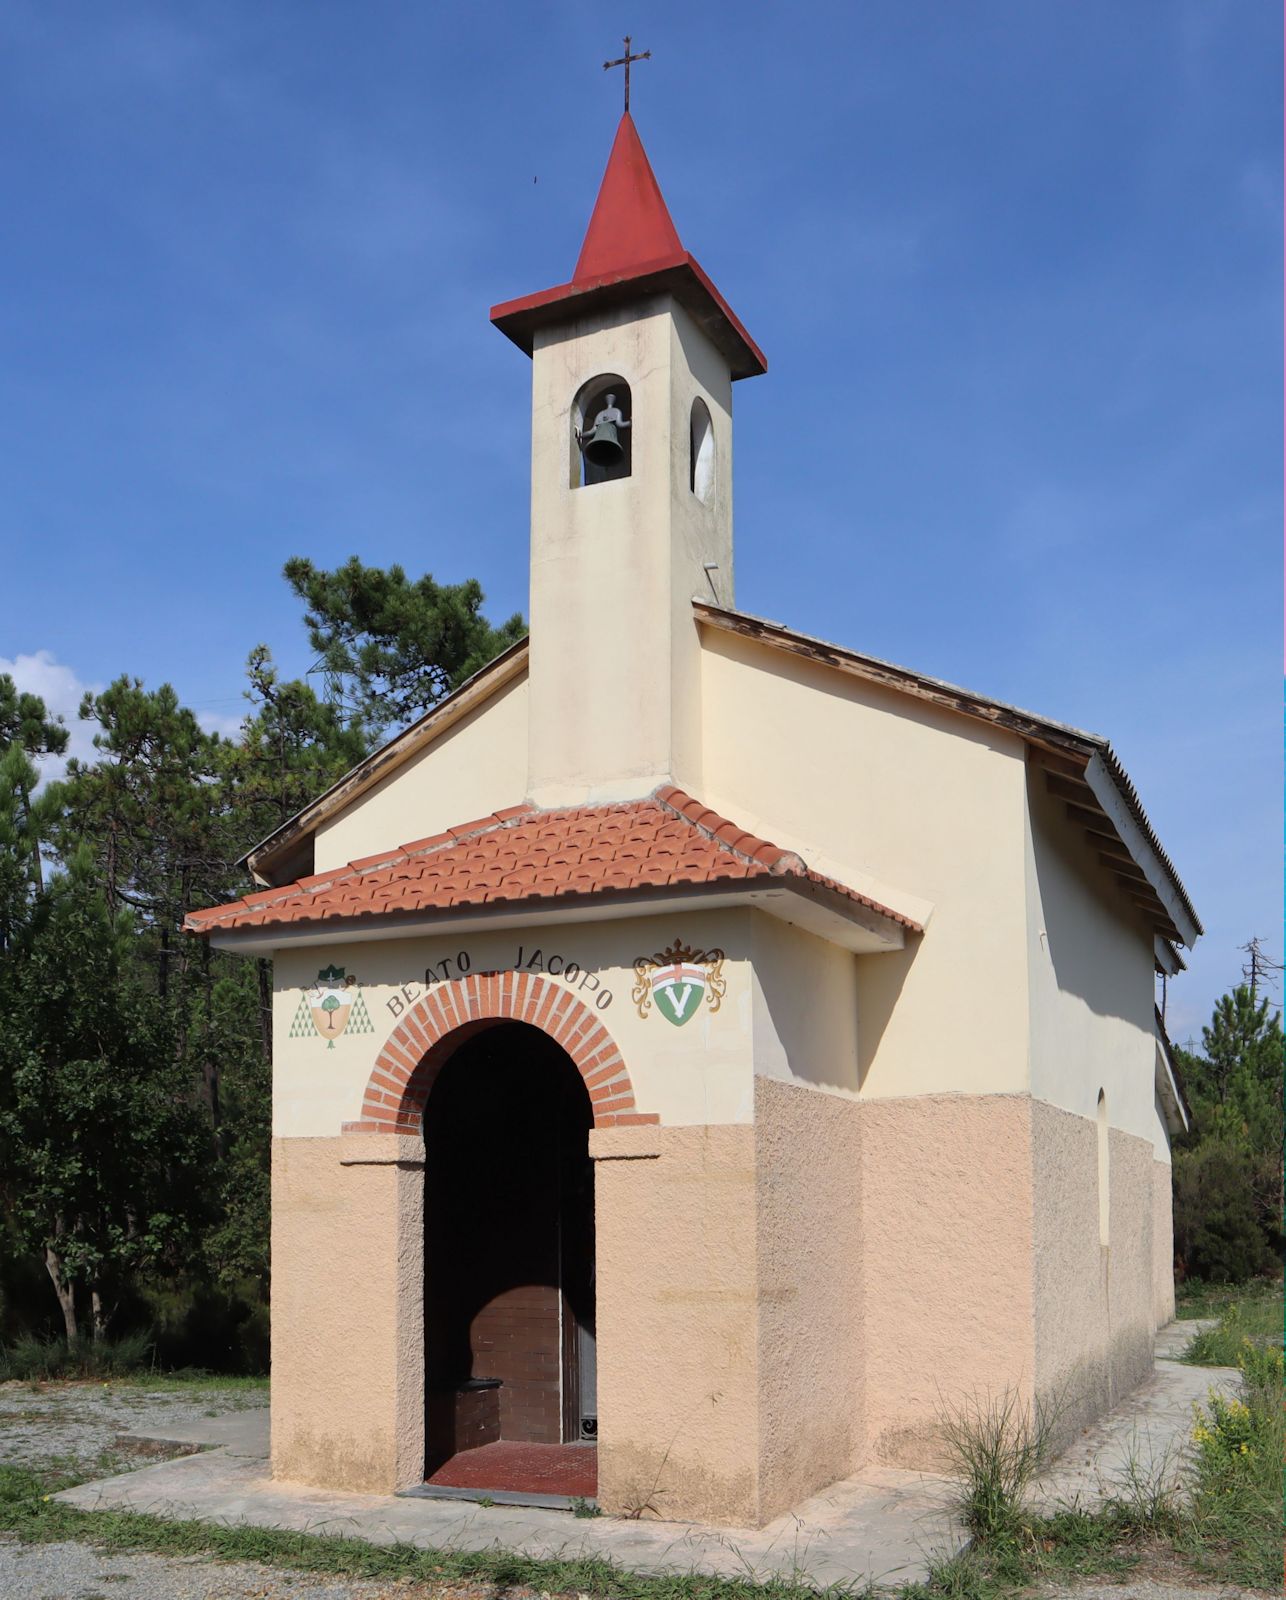 Kapelle, angeblich an derStelle des Geburtshauses von Jakobus, in den Bergen bei Varazze